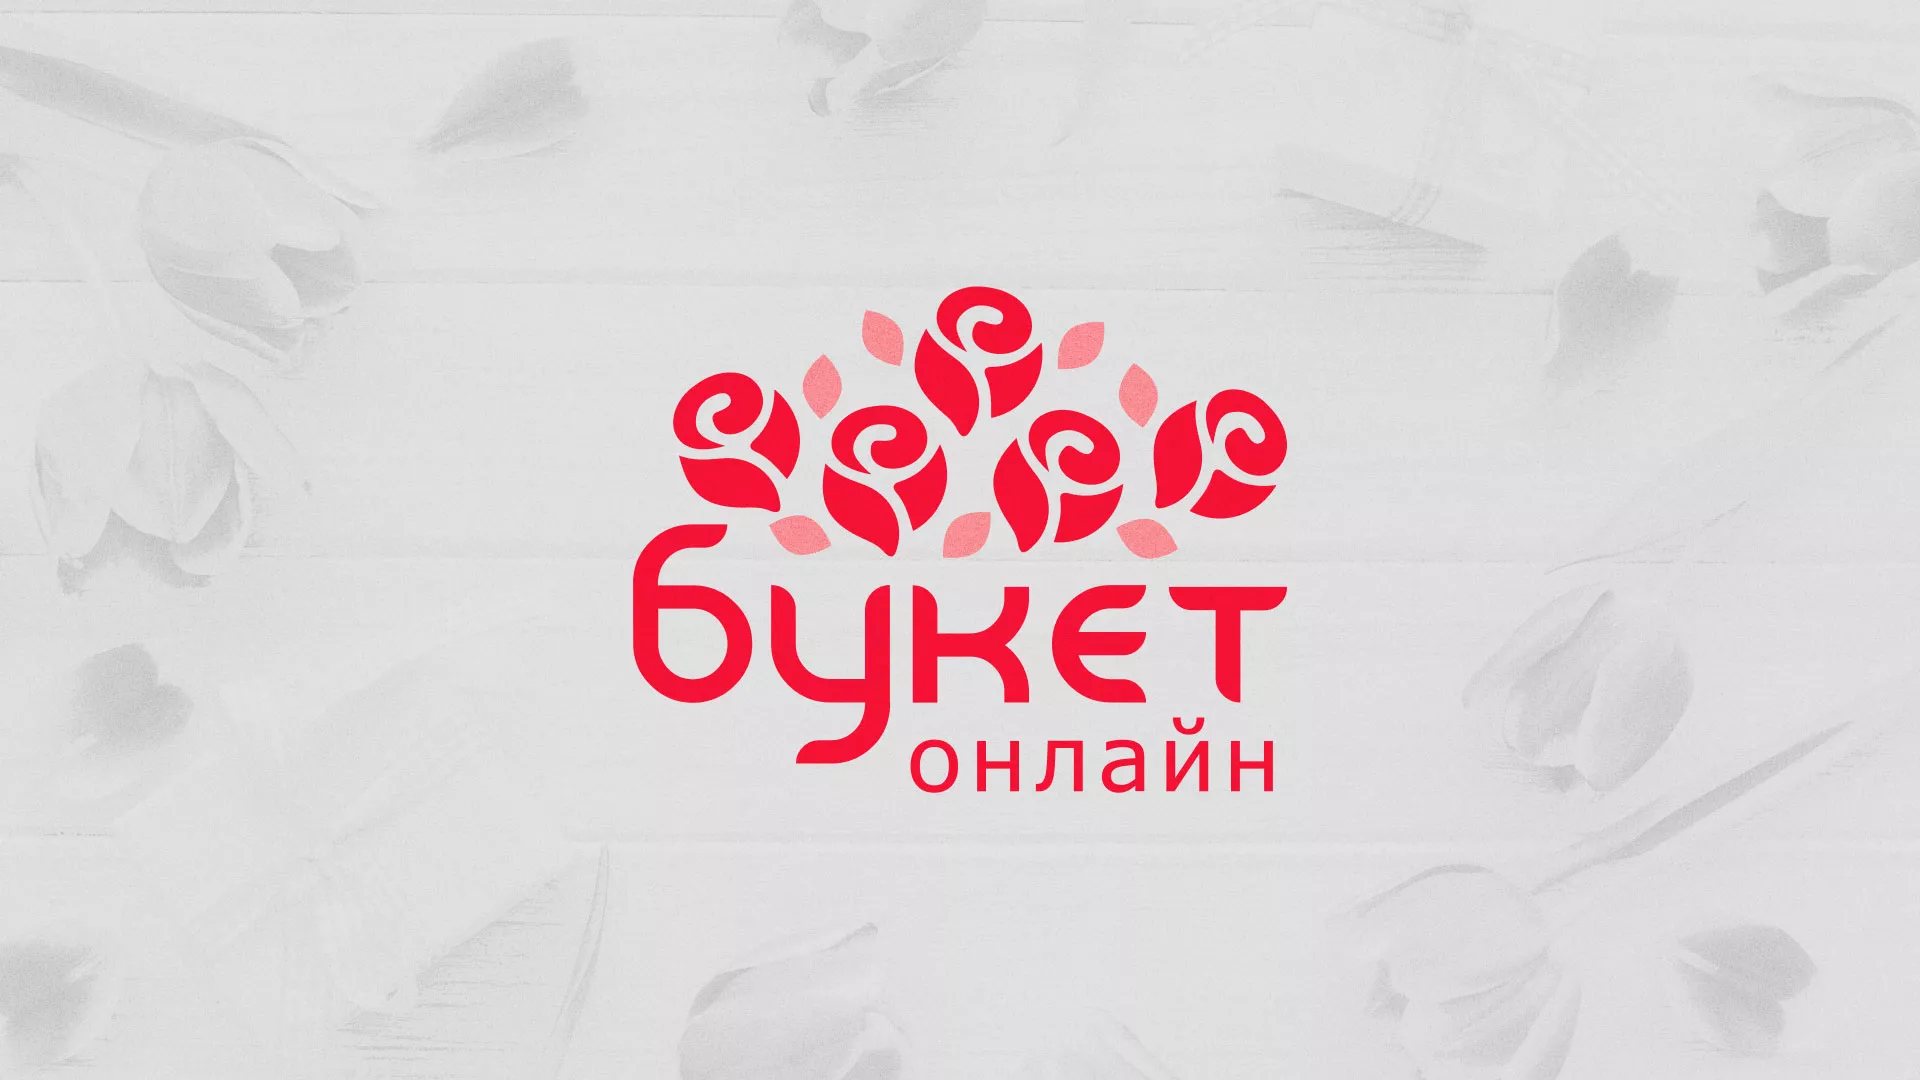 Создание интернет-магазина «Букет-онлайн» по цветам в Михайловке